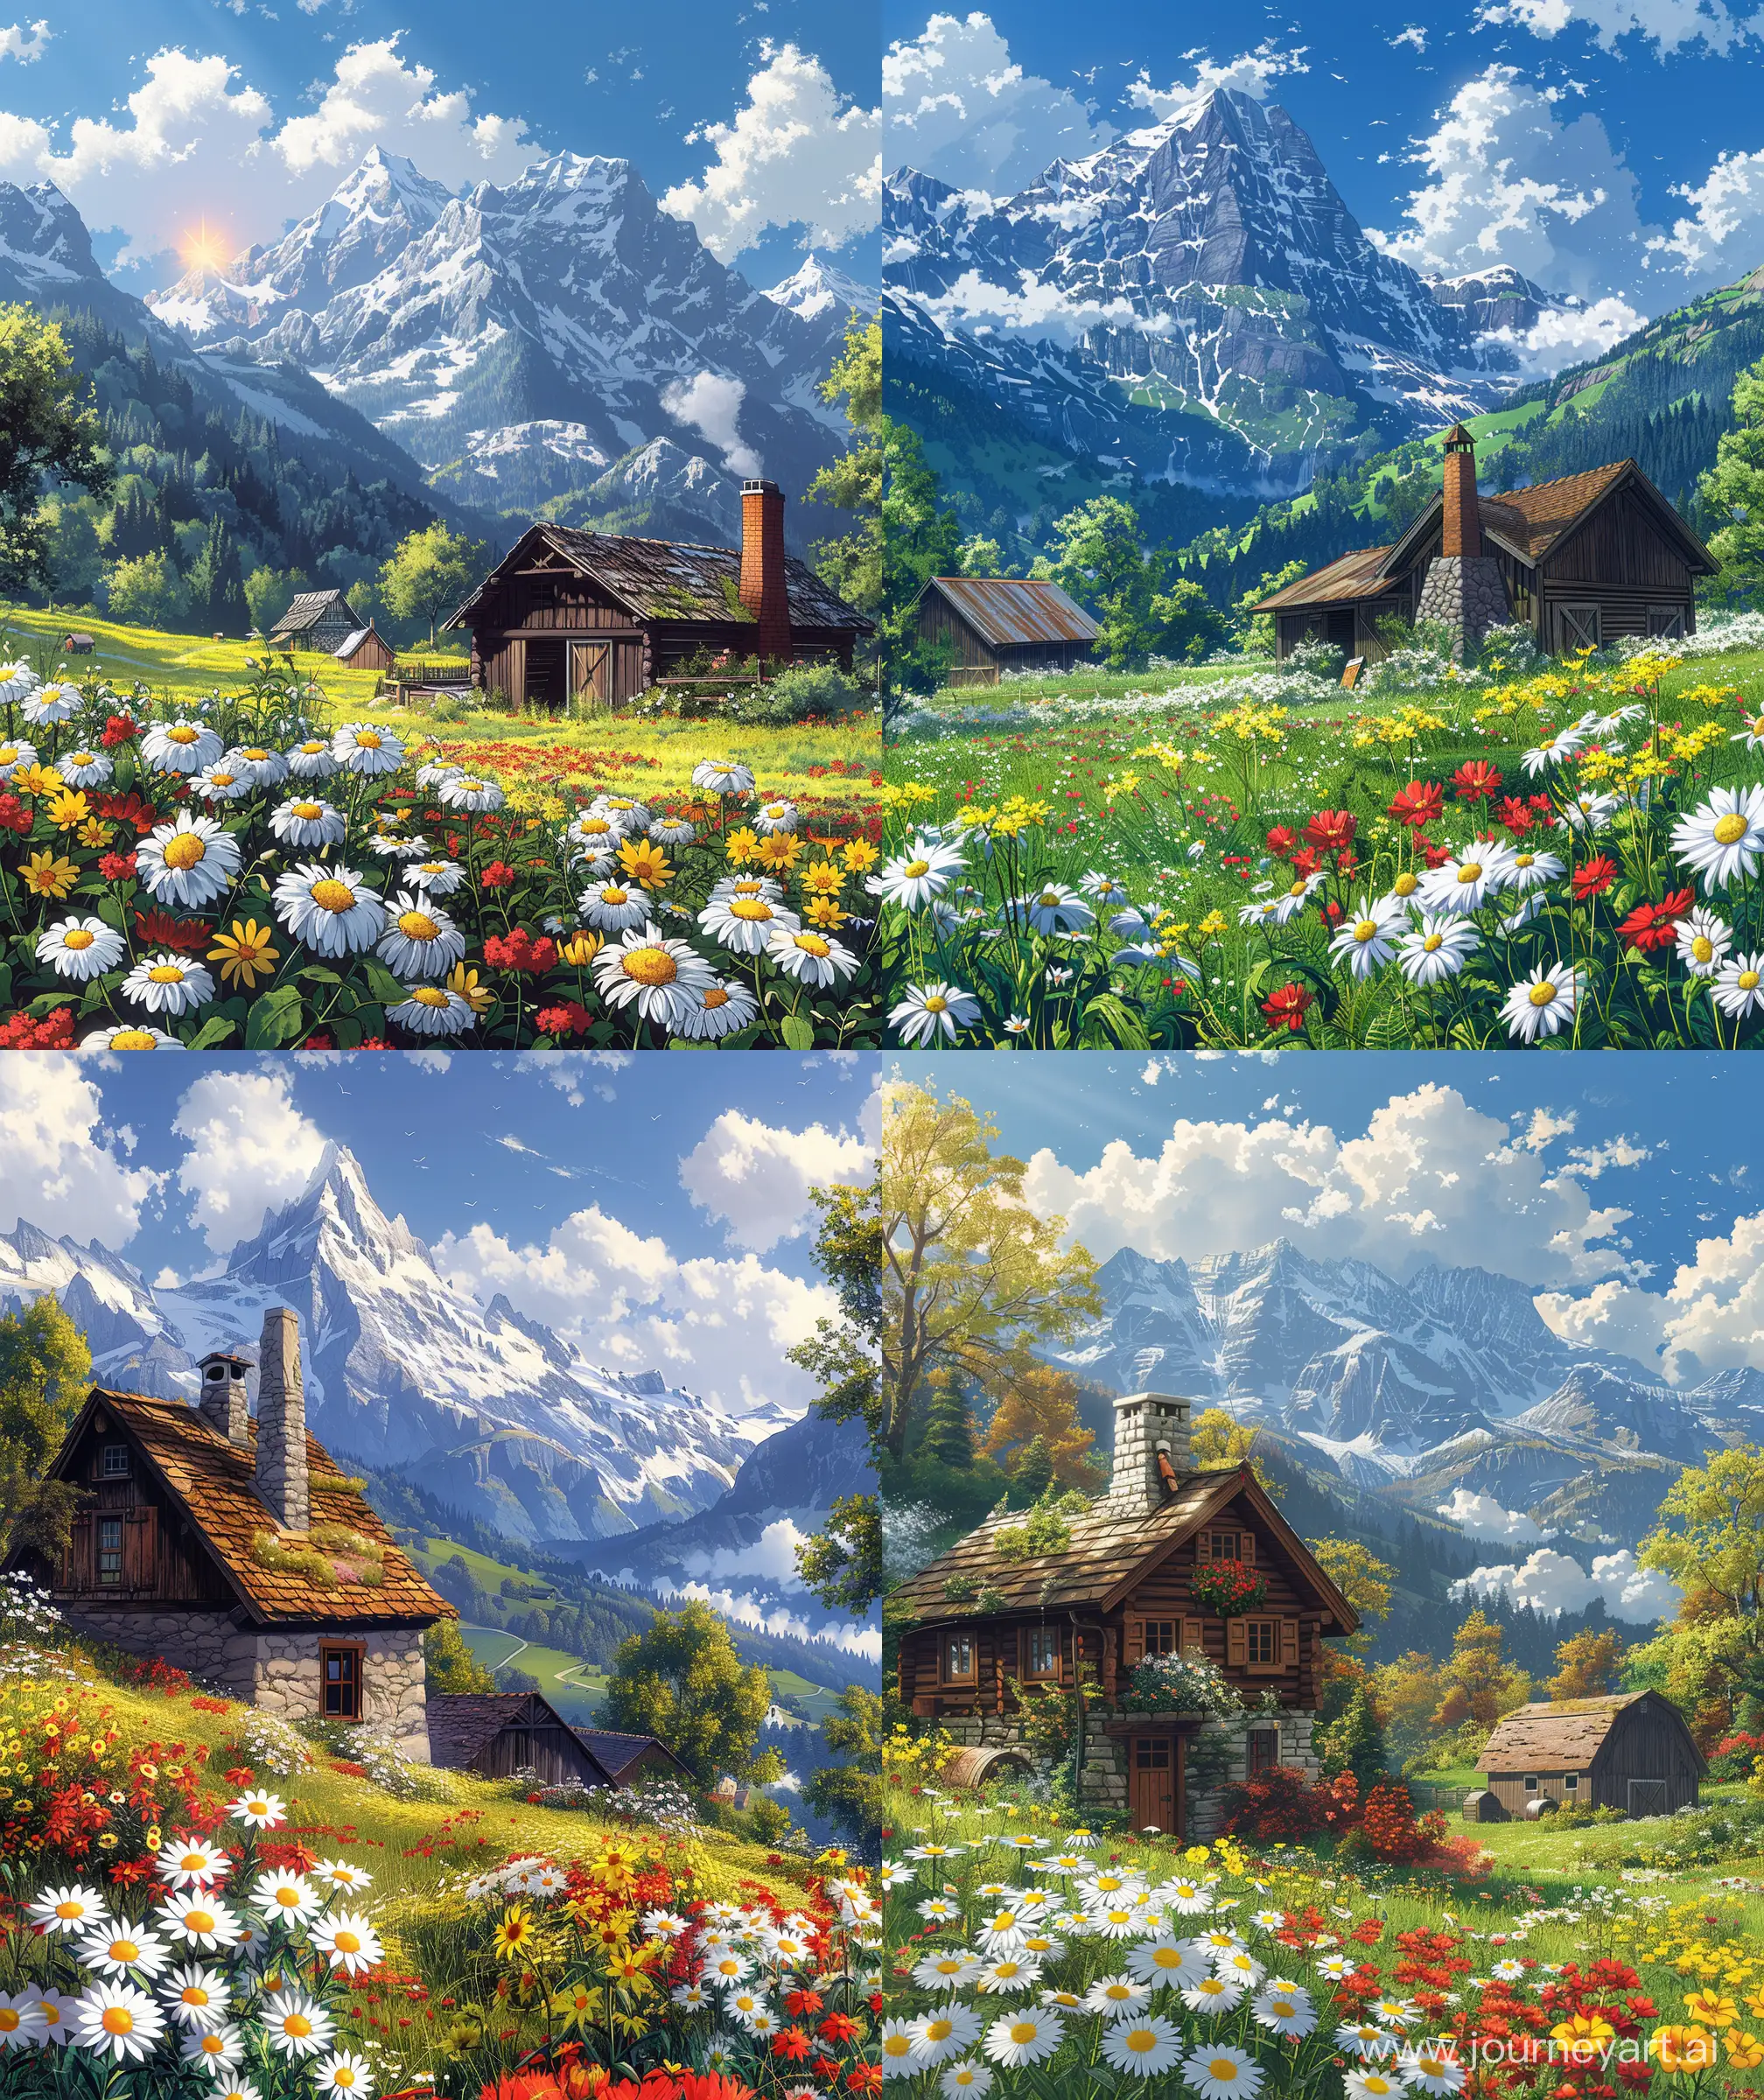 Switzerland-Cottage-with-Spring-Flowers-Makoto-Shinkai-Style-Anime-Scenery